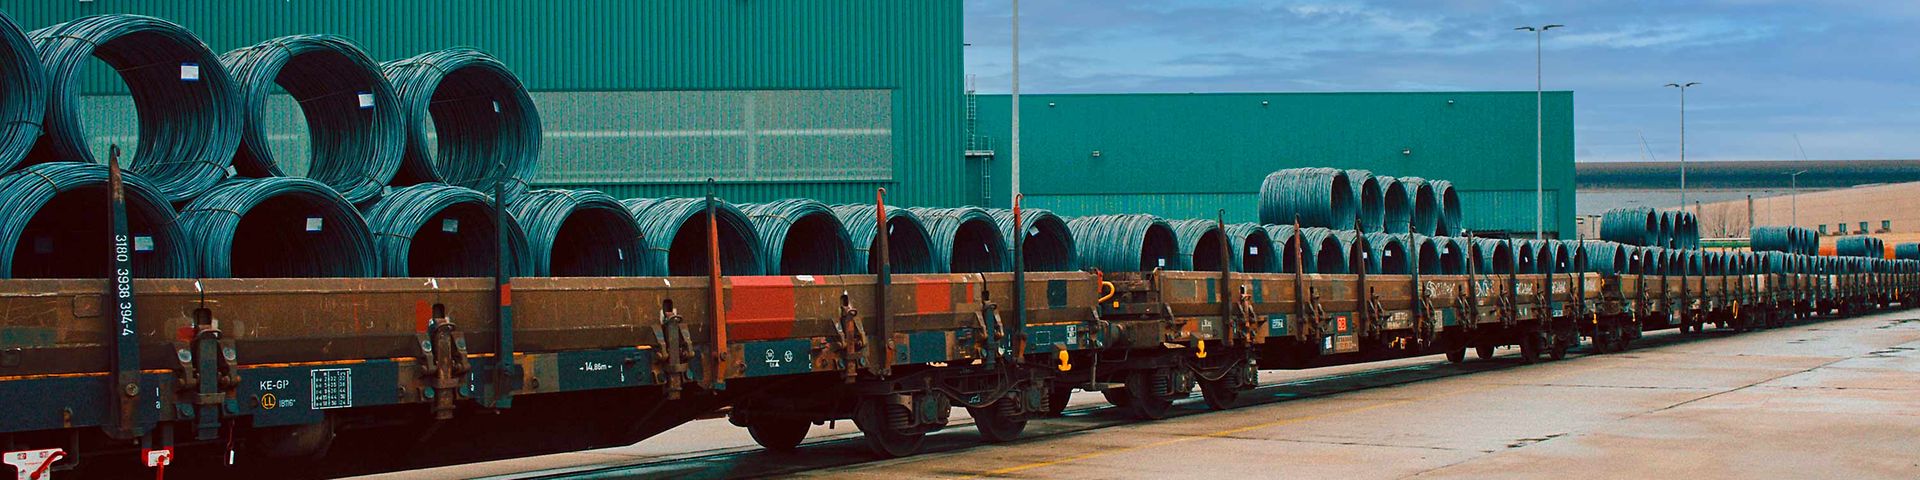 Stahlrollen liegen zum Transport auf einem Güterwagen bereit.